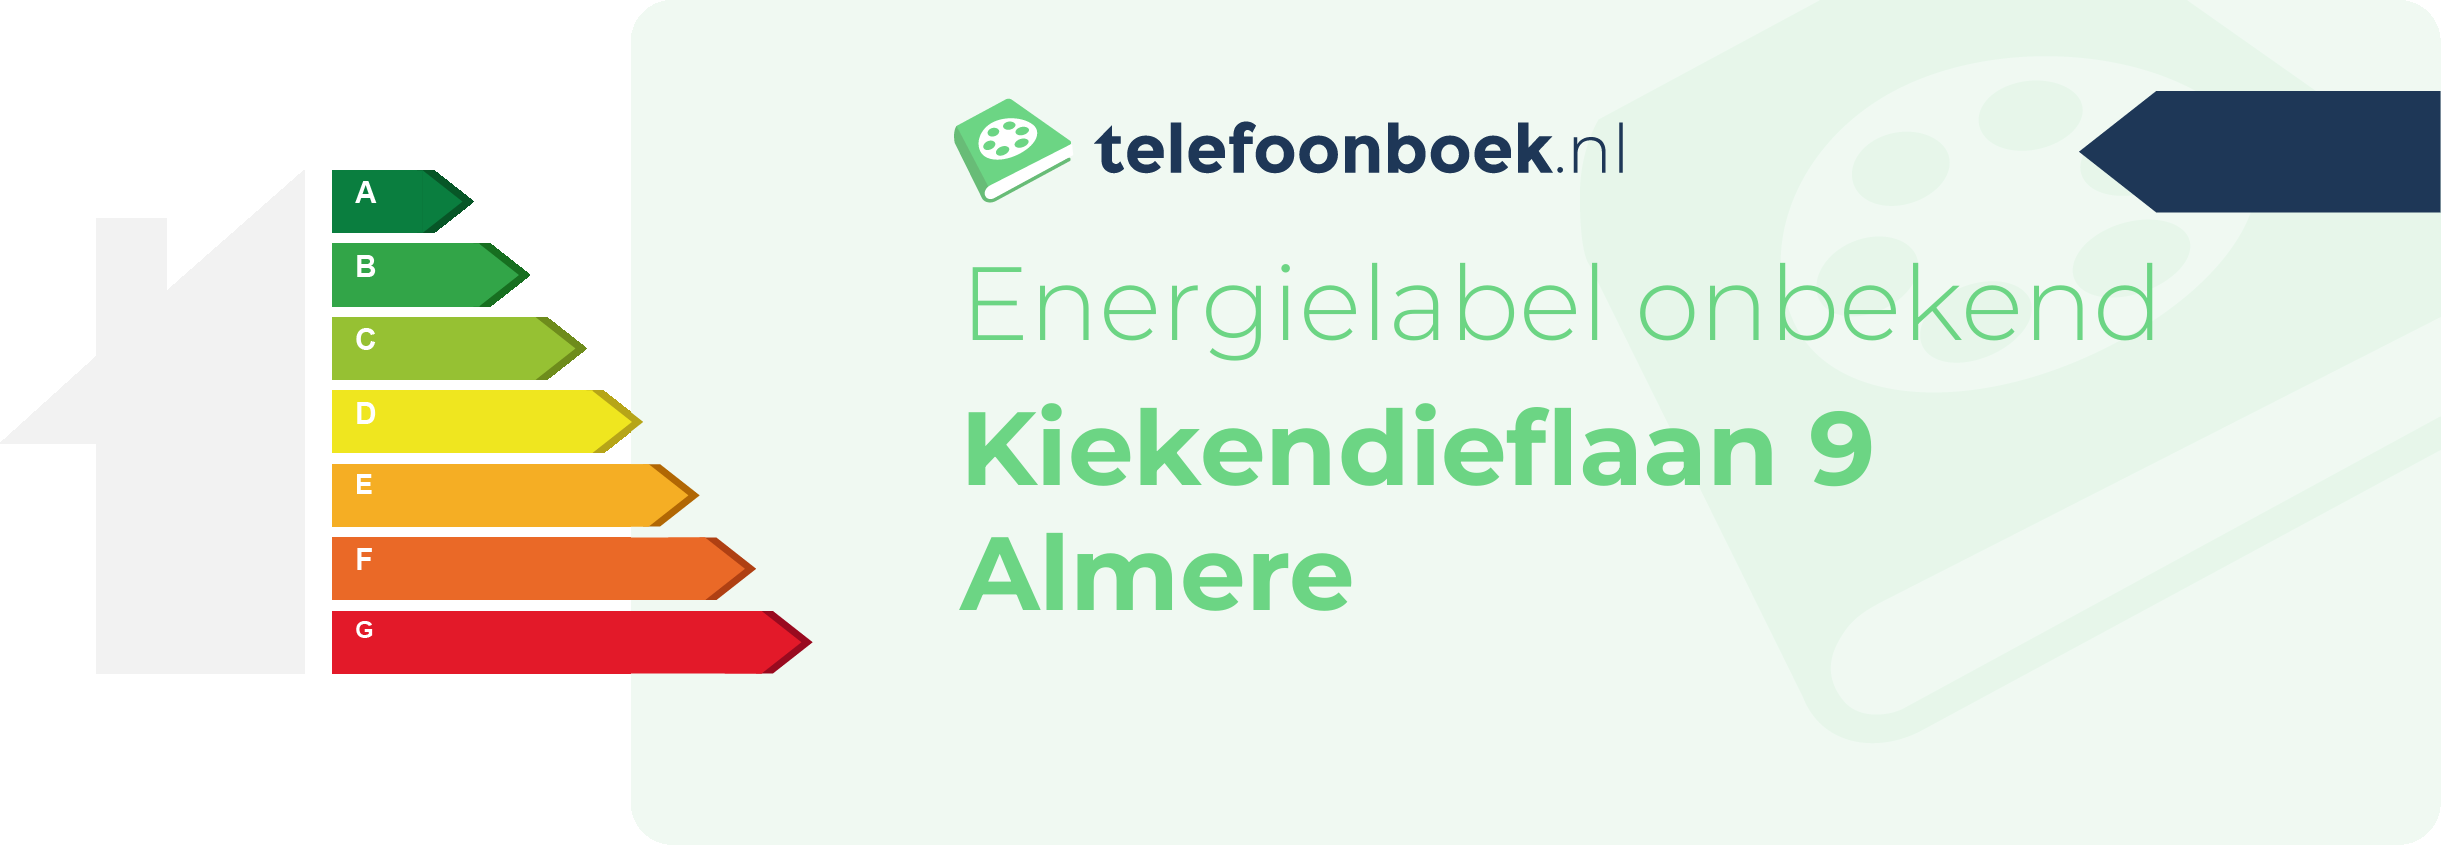 Energielabel Kiekendieflaan 9 Almere